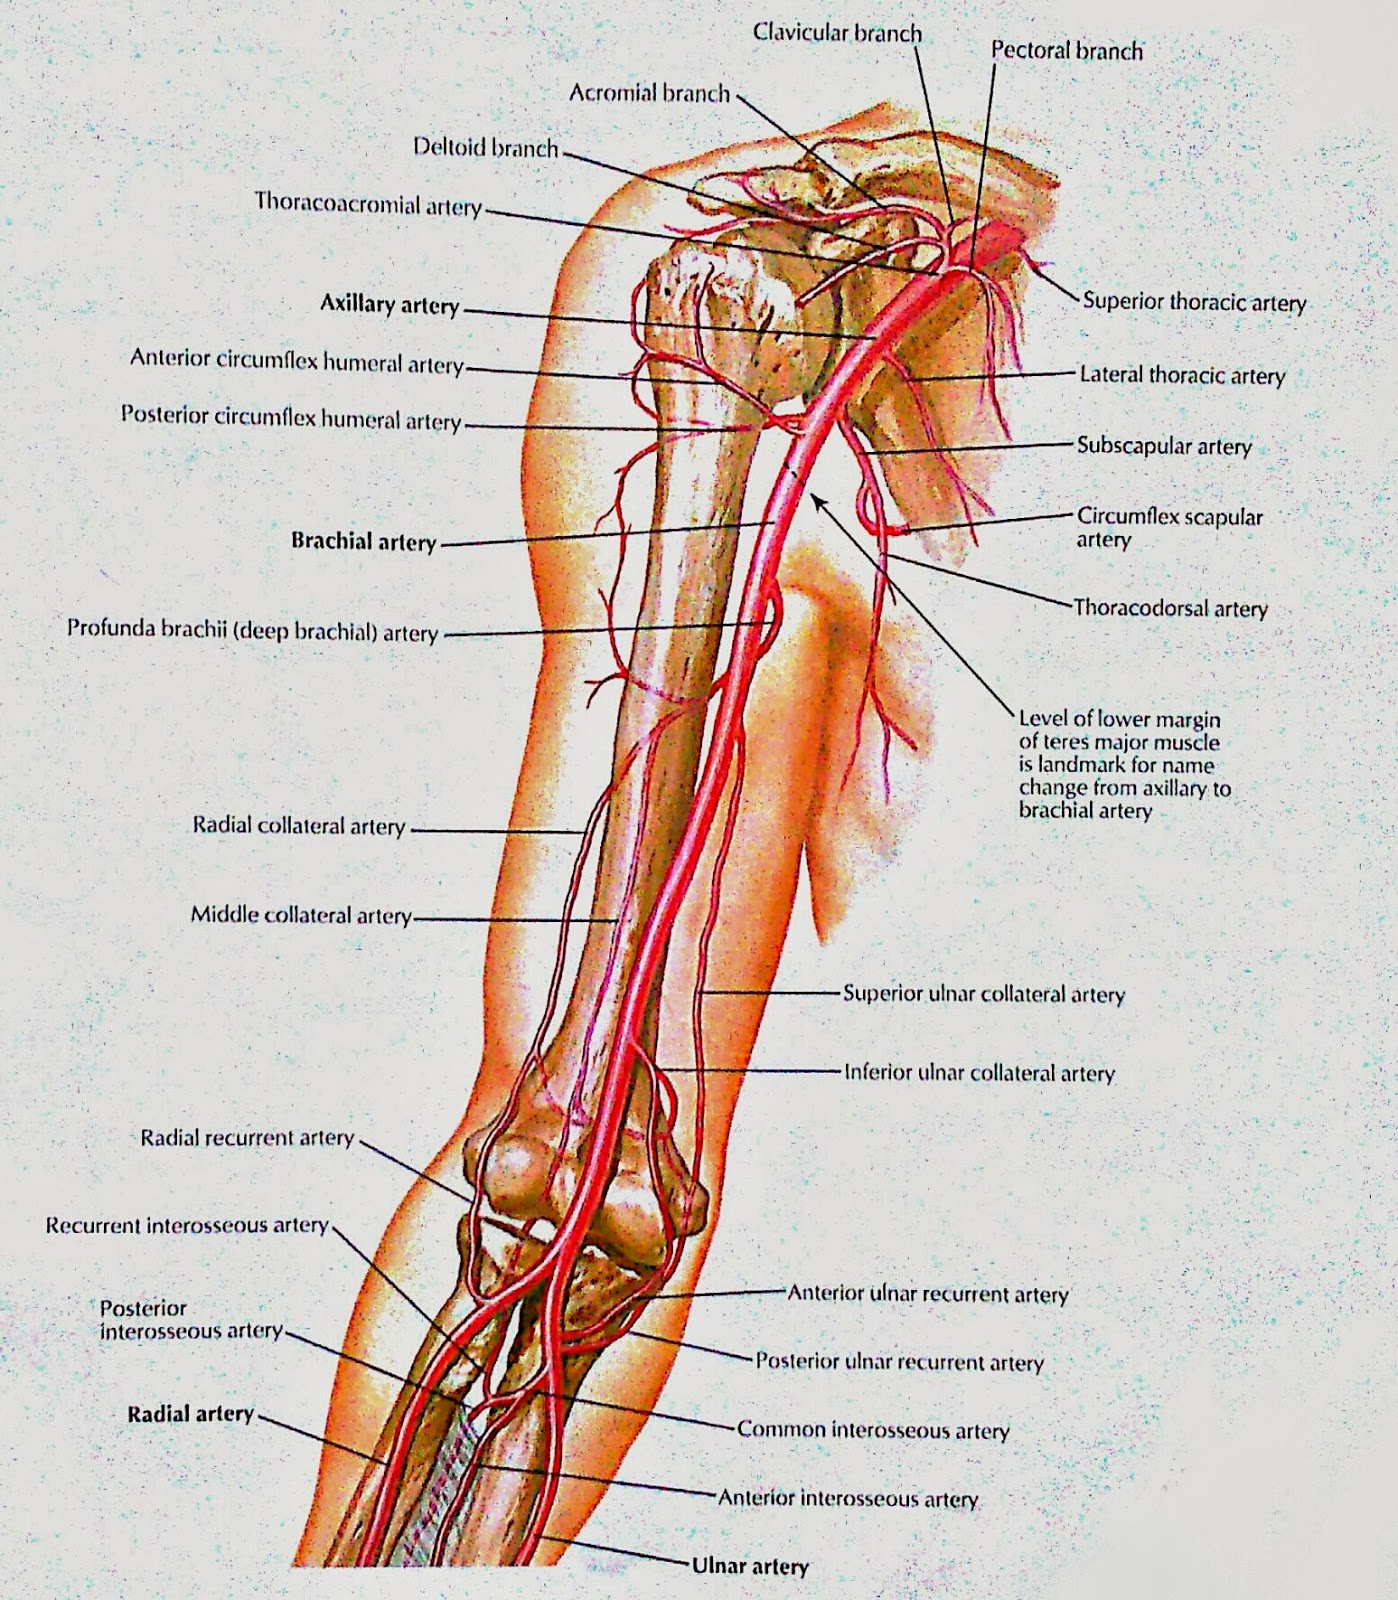 Кровообращение верхней конечности. Кровоснабжение верхней конечности анатомия. Схема кровообращения верхней конечности. Артерии верхней конечности анатомия схема. Артерии верхней конечности анатомия на латинском.